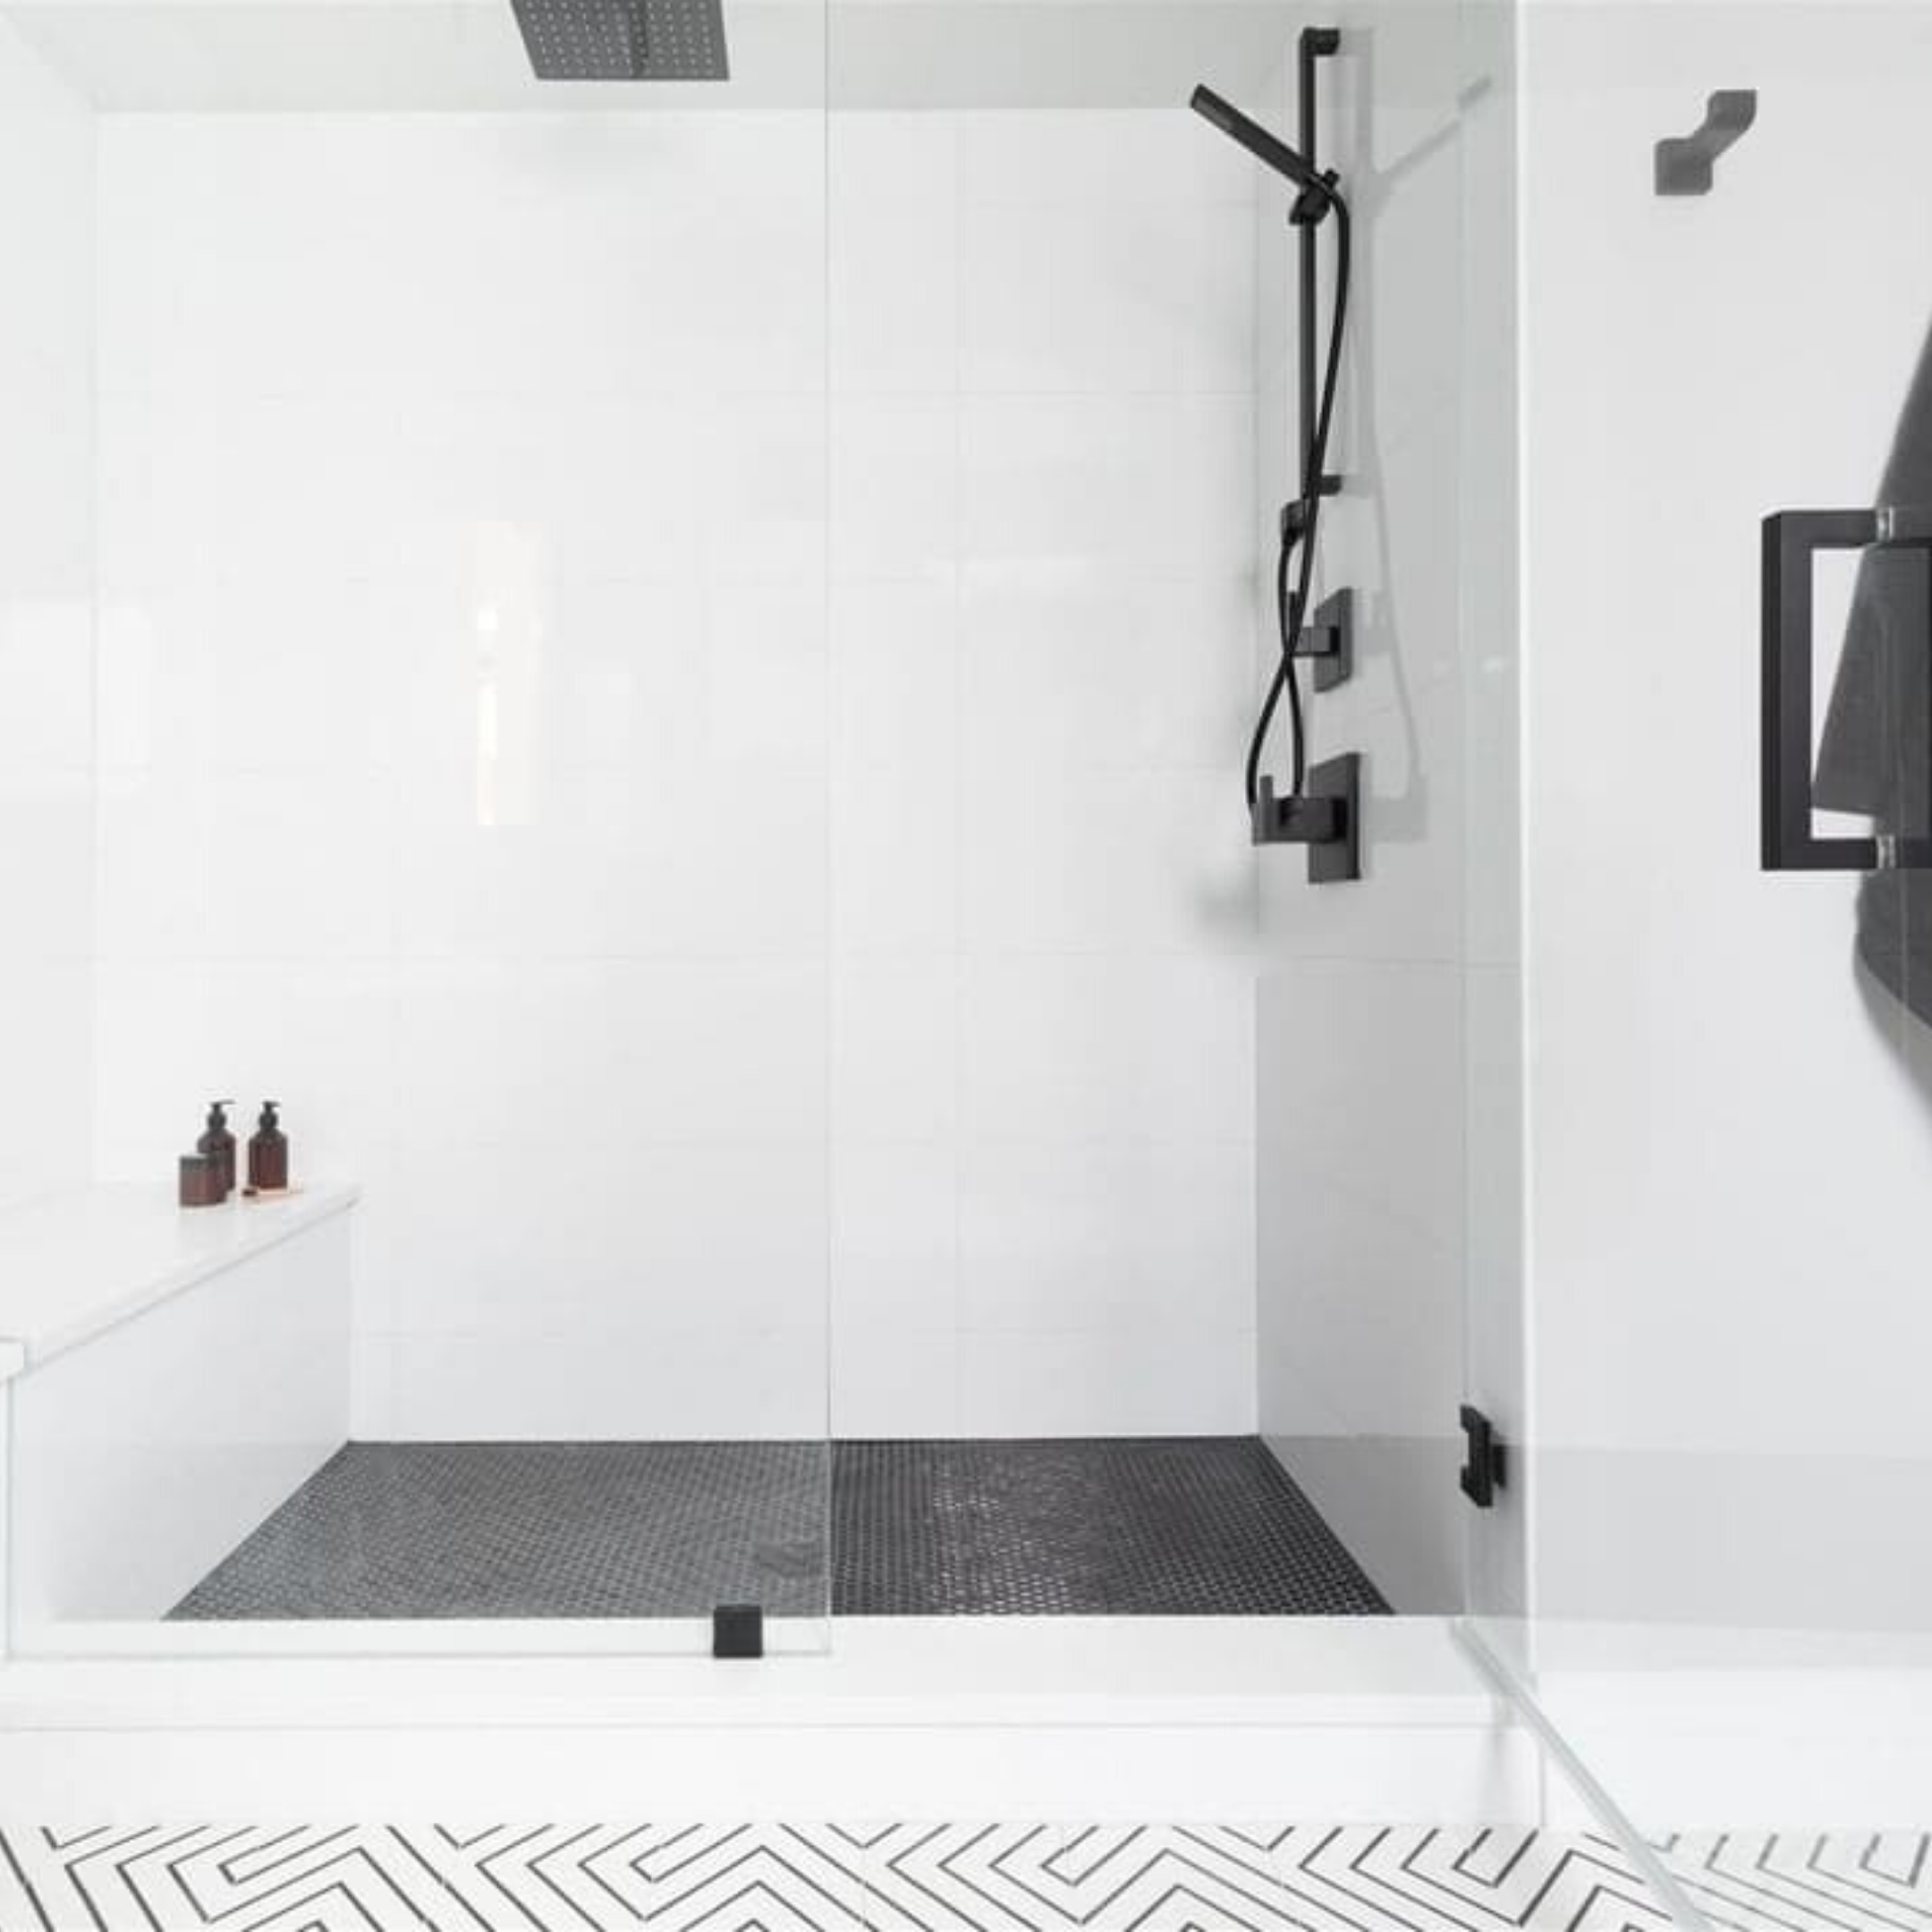 10 Walk In Shower Tile Ideas That Will, White Shower Tile Ideas